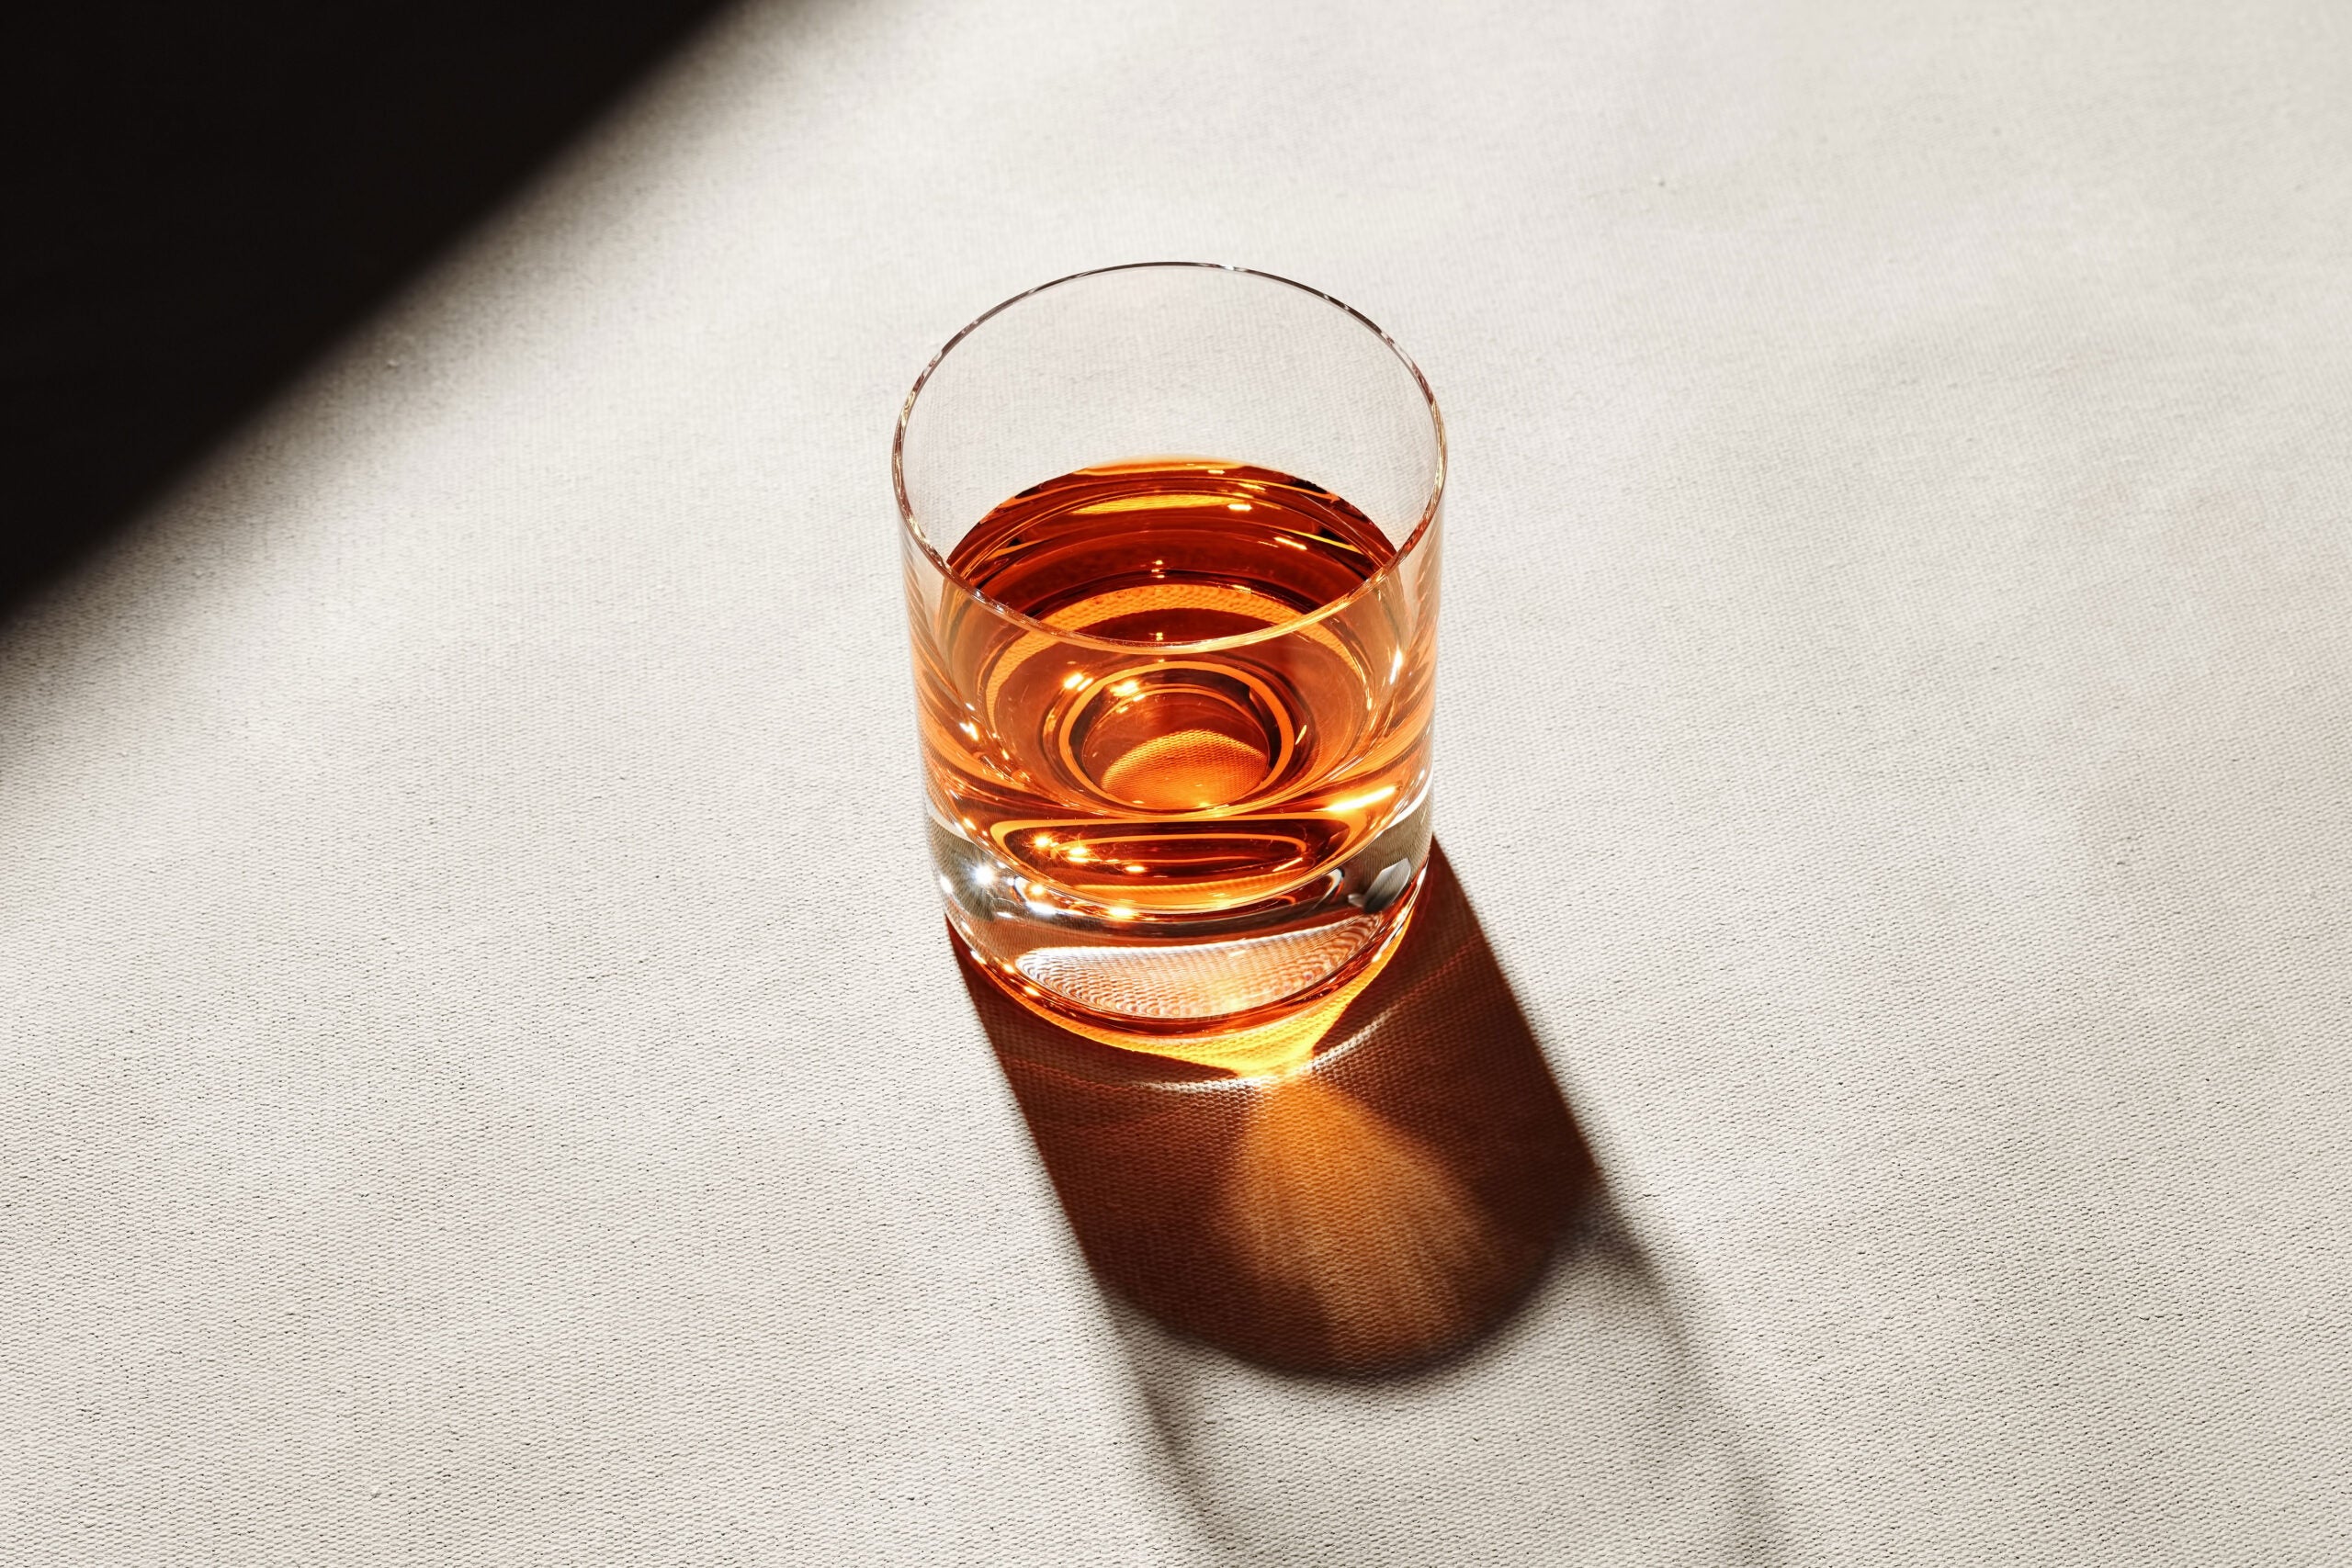 Strange Ice Wedge Whiskey Glass: Does it Work? 